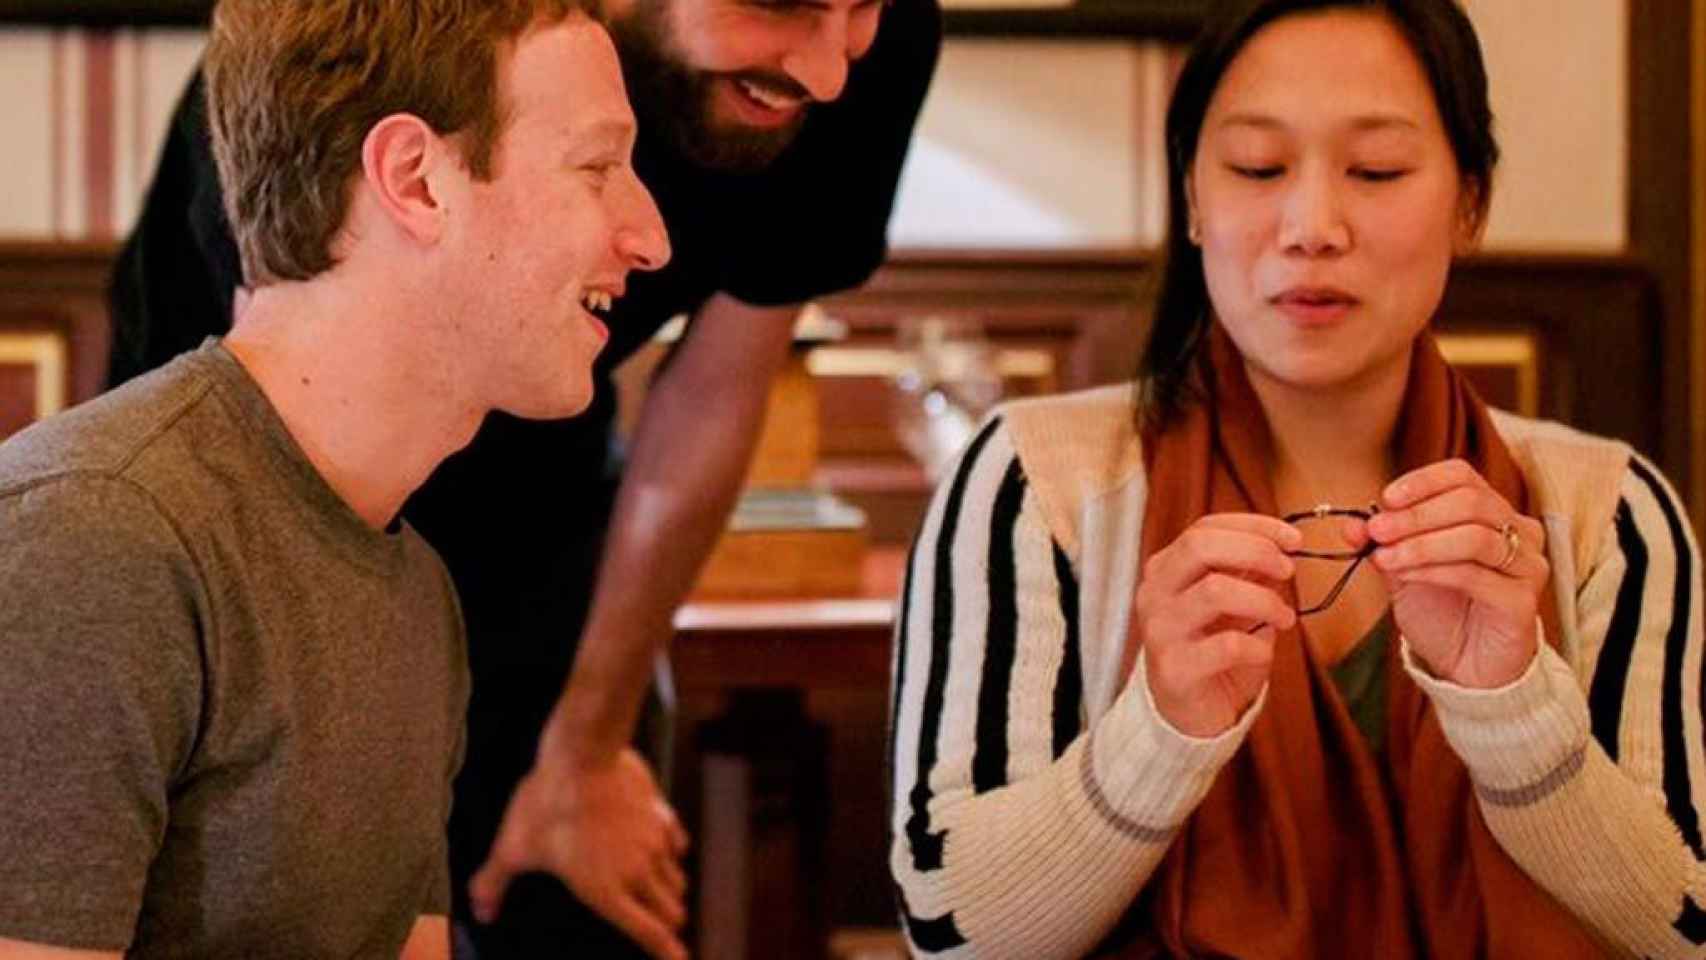 Gerard Piqué de cena con el creador de Facebook